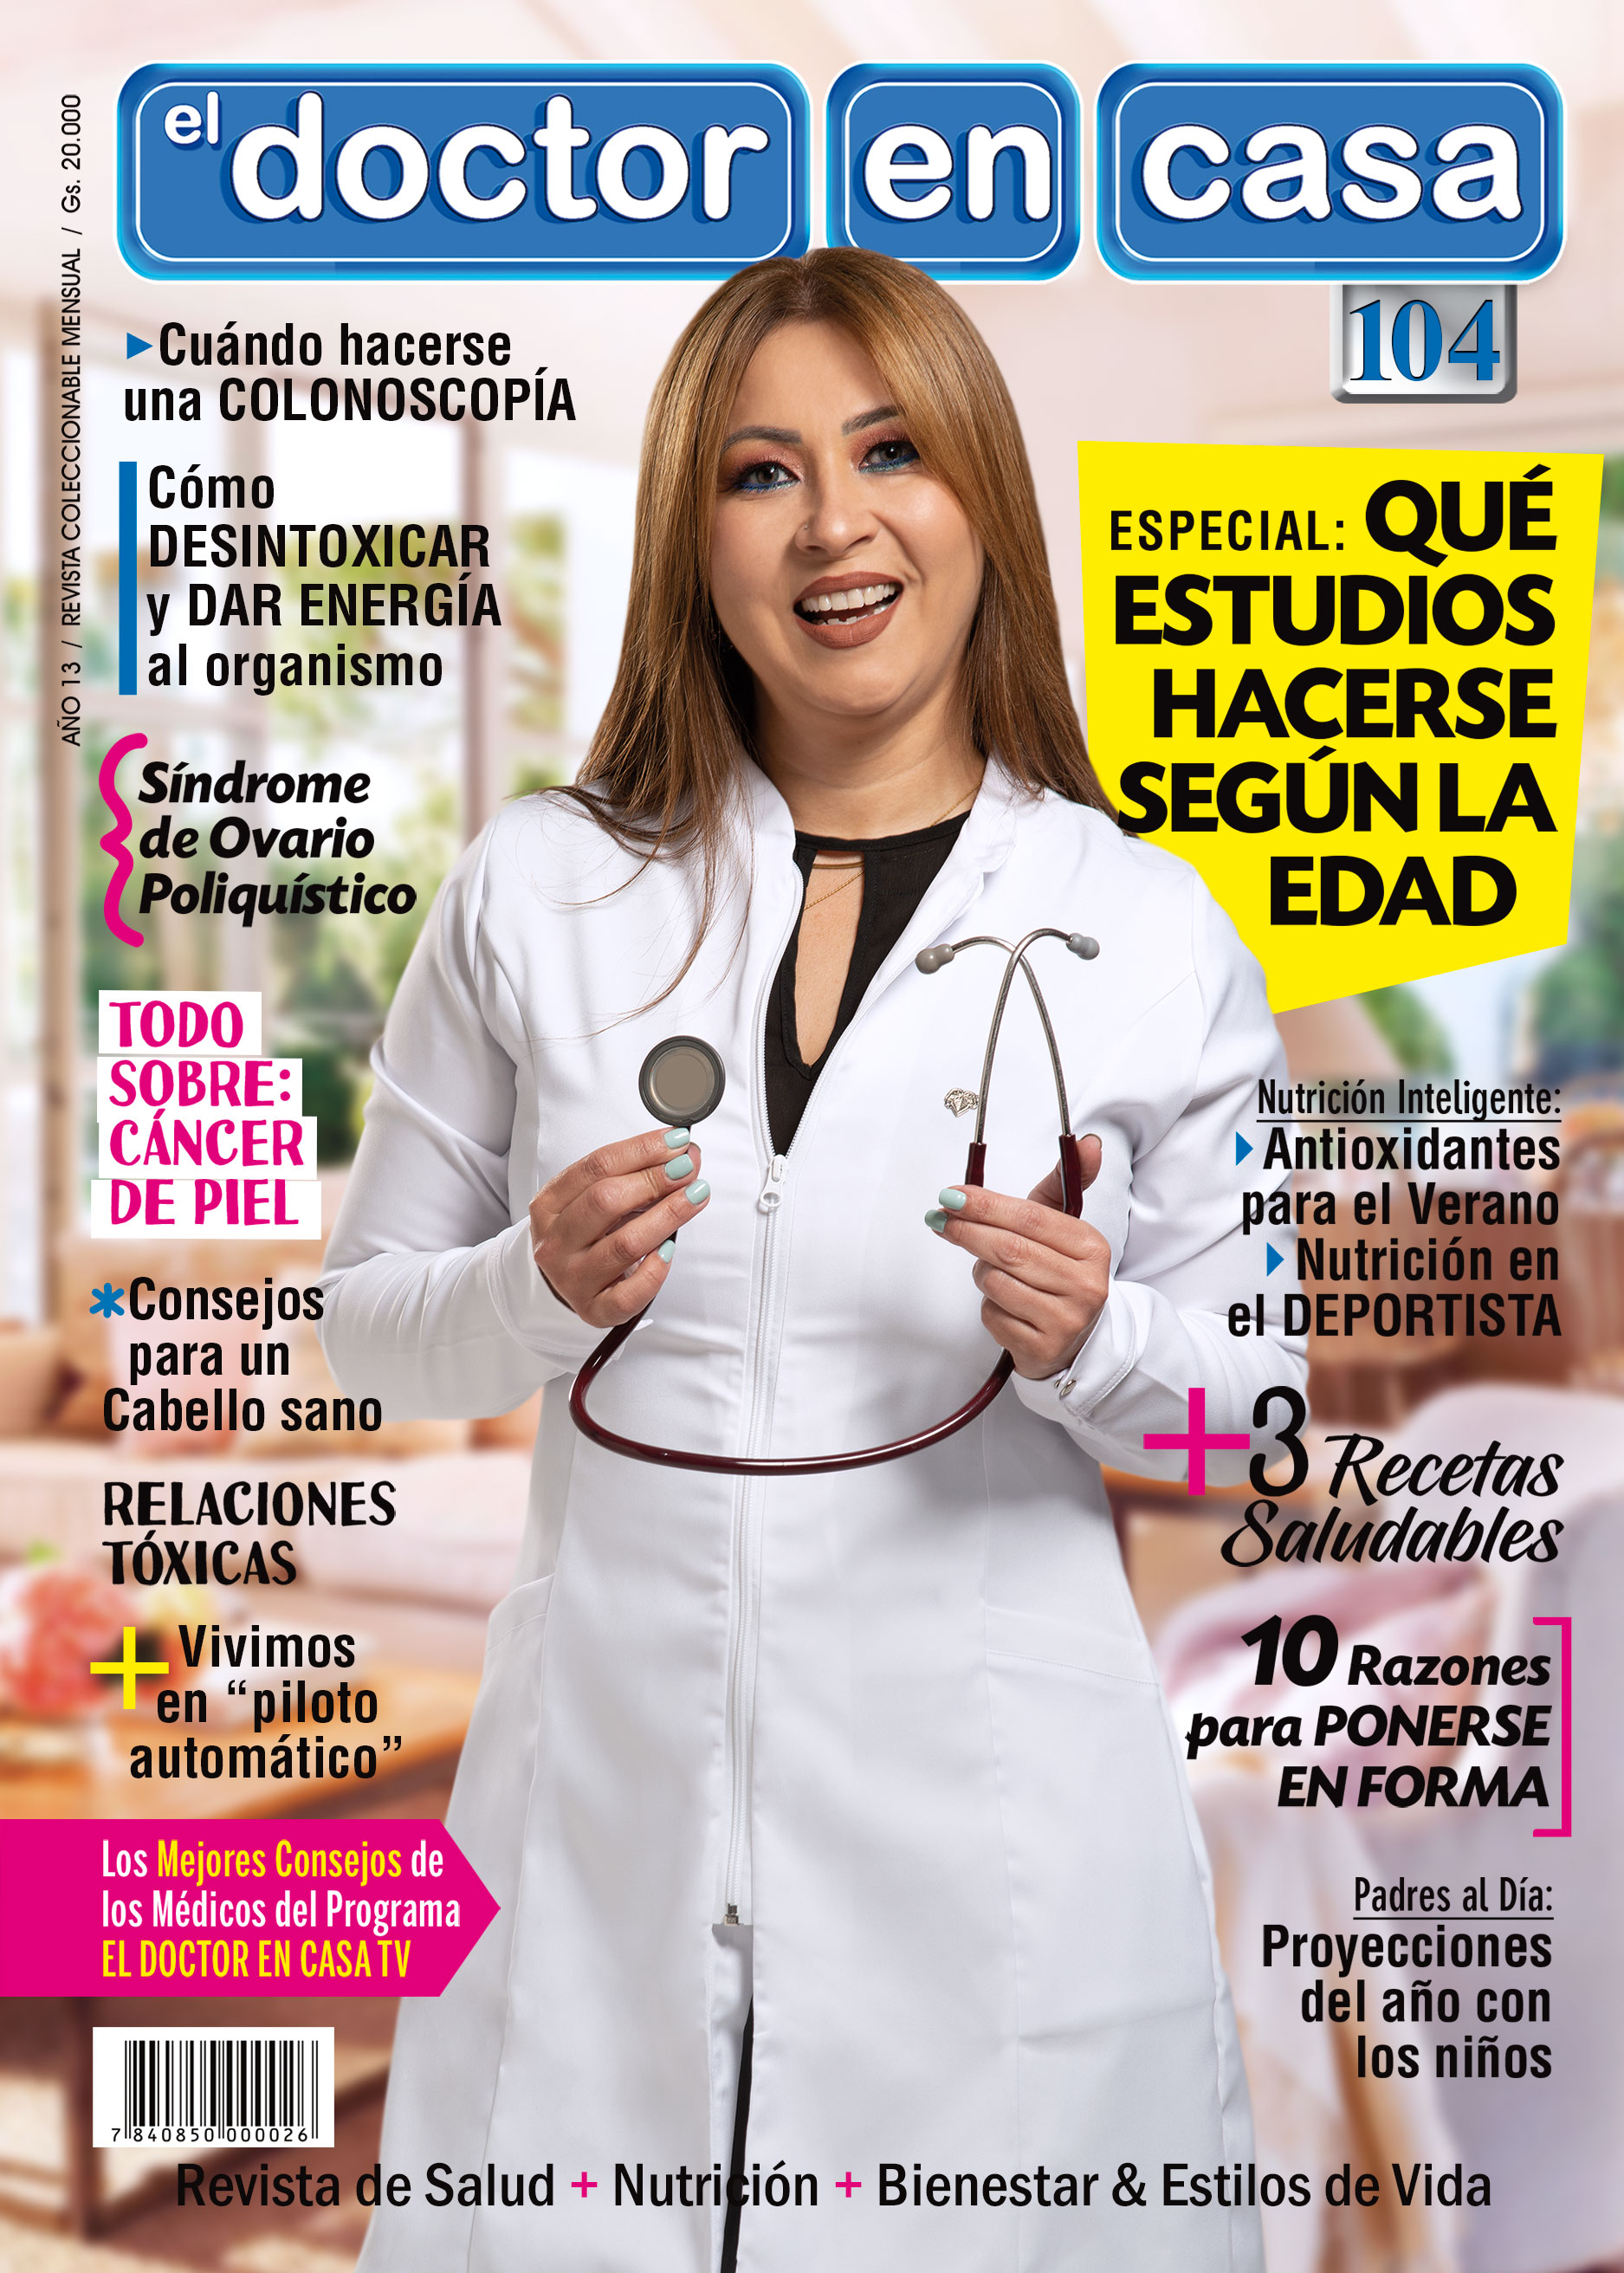 DOCTOR EN CASA PRODUCTOS MULTIMEDIOS ALICANTE